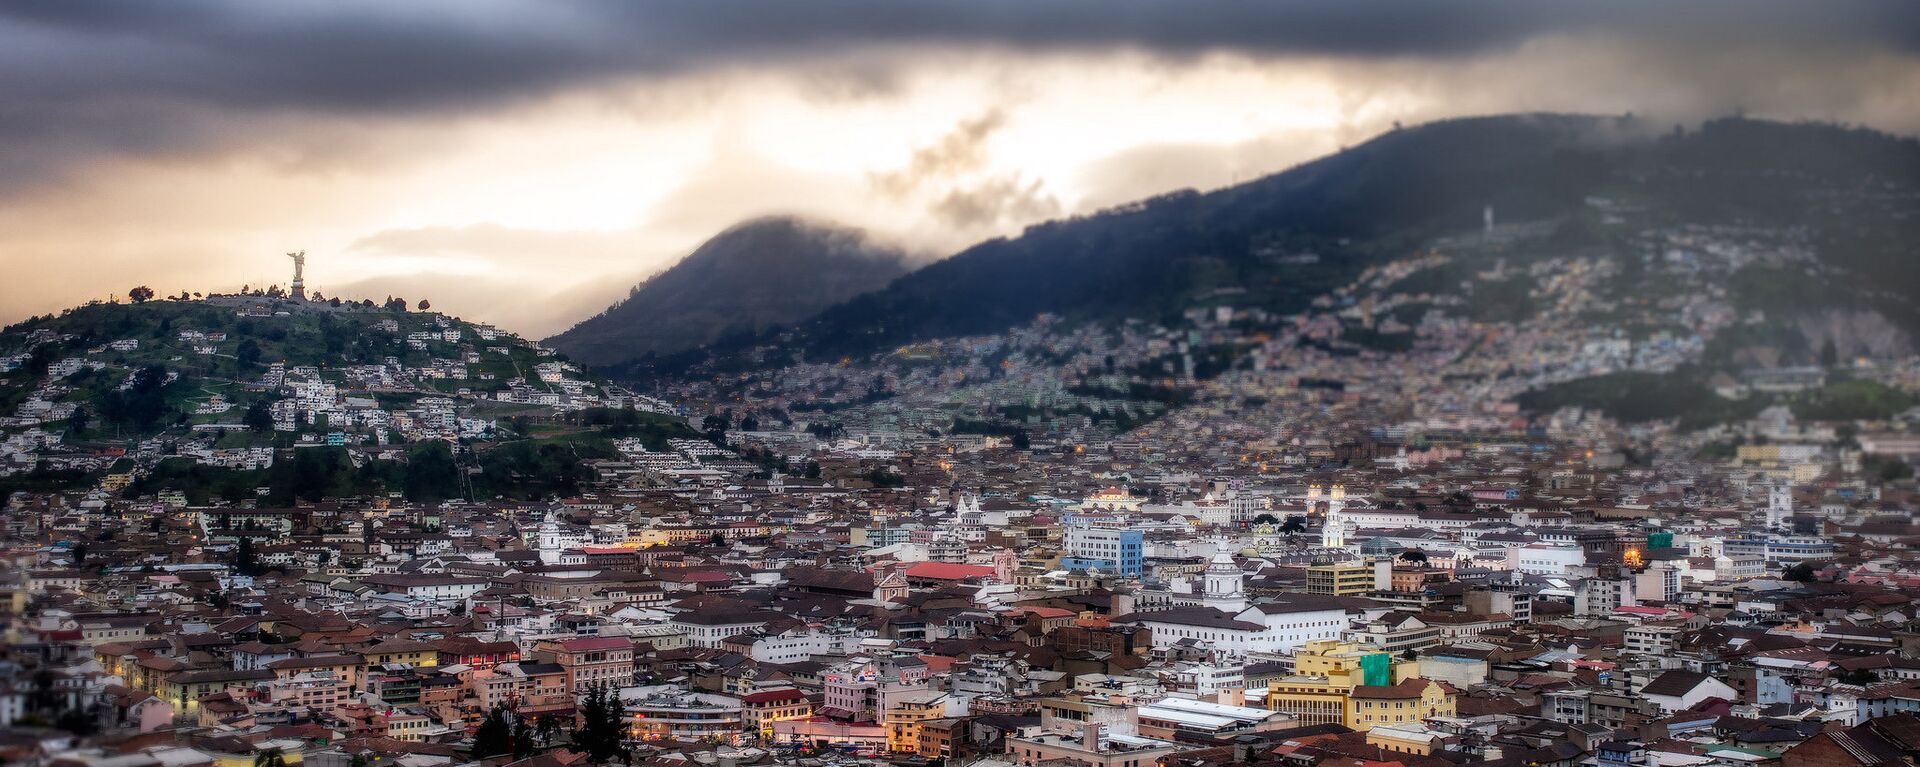 Quito, la capital de Ecuador - Sputnik Mundo, 1920, 16.06.2021